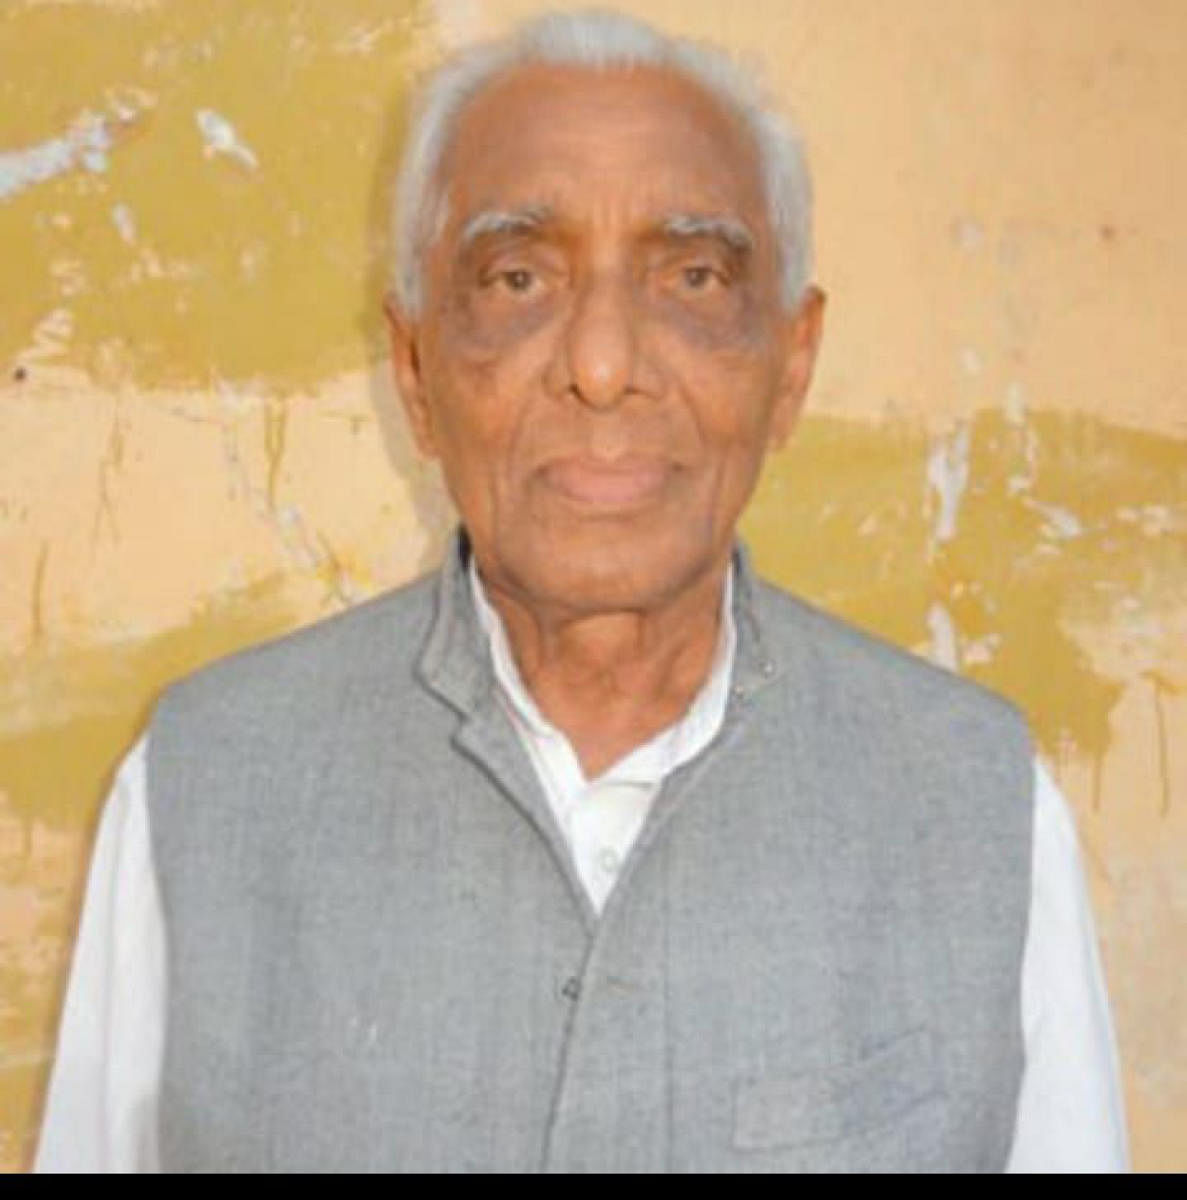 Mahabaleshwar Bhat passes away